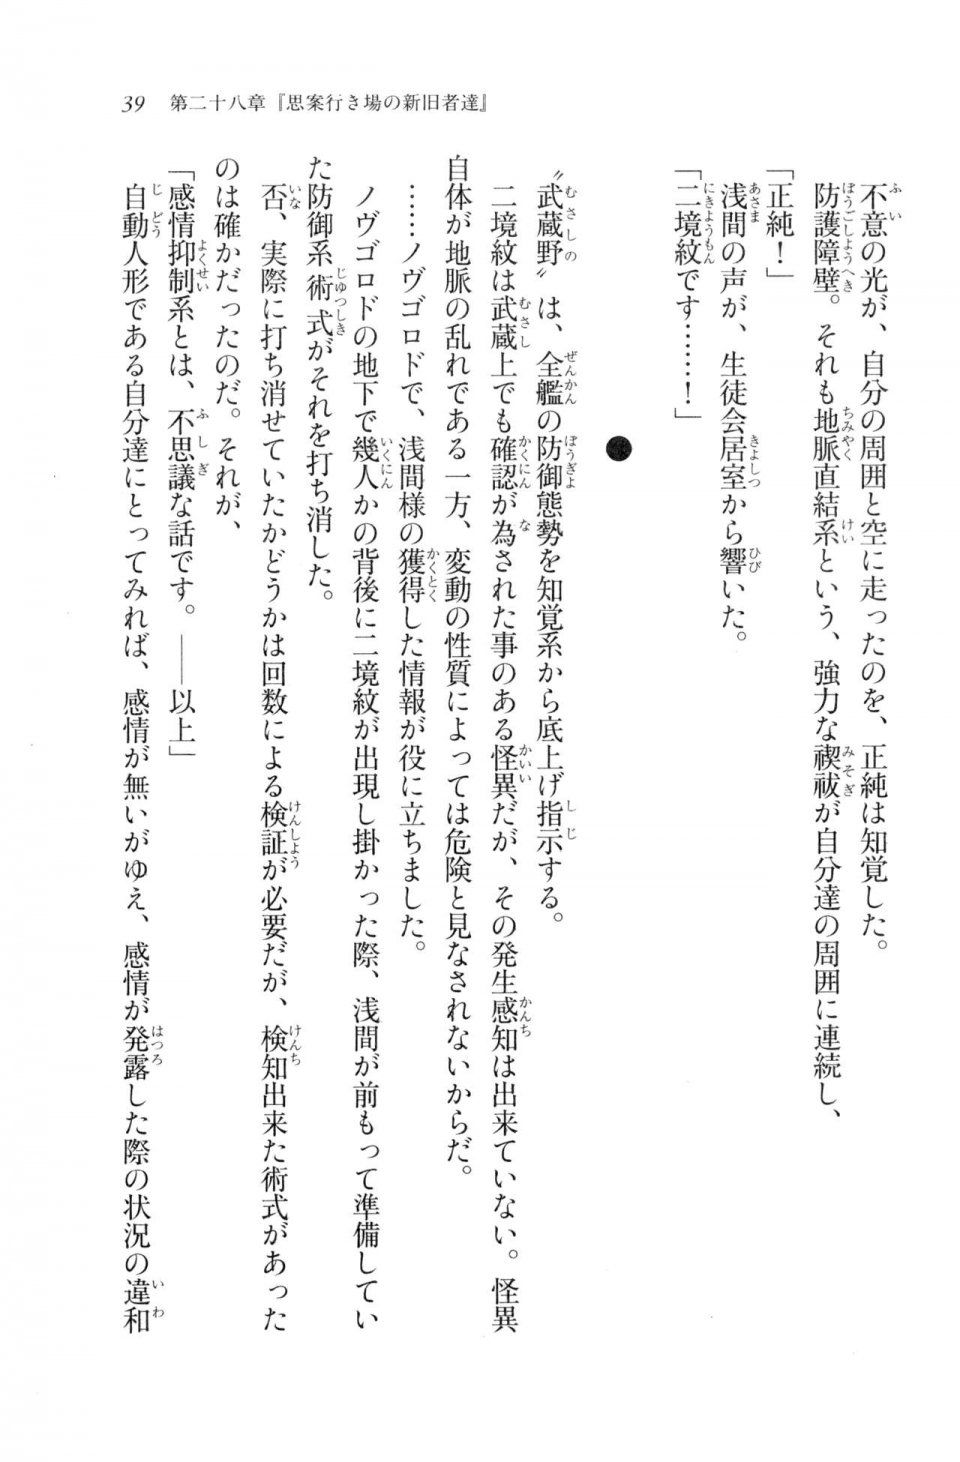 Kyoukai Senjou no Horizon LN Vol 20(8B) - Photo #39